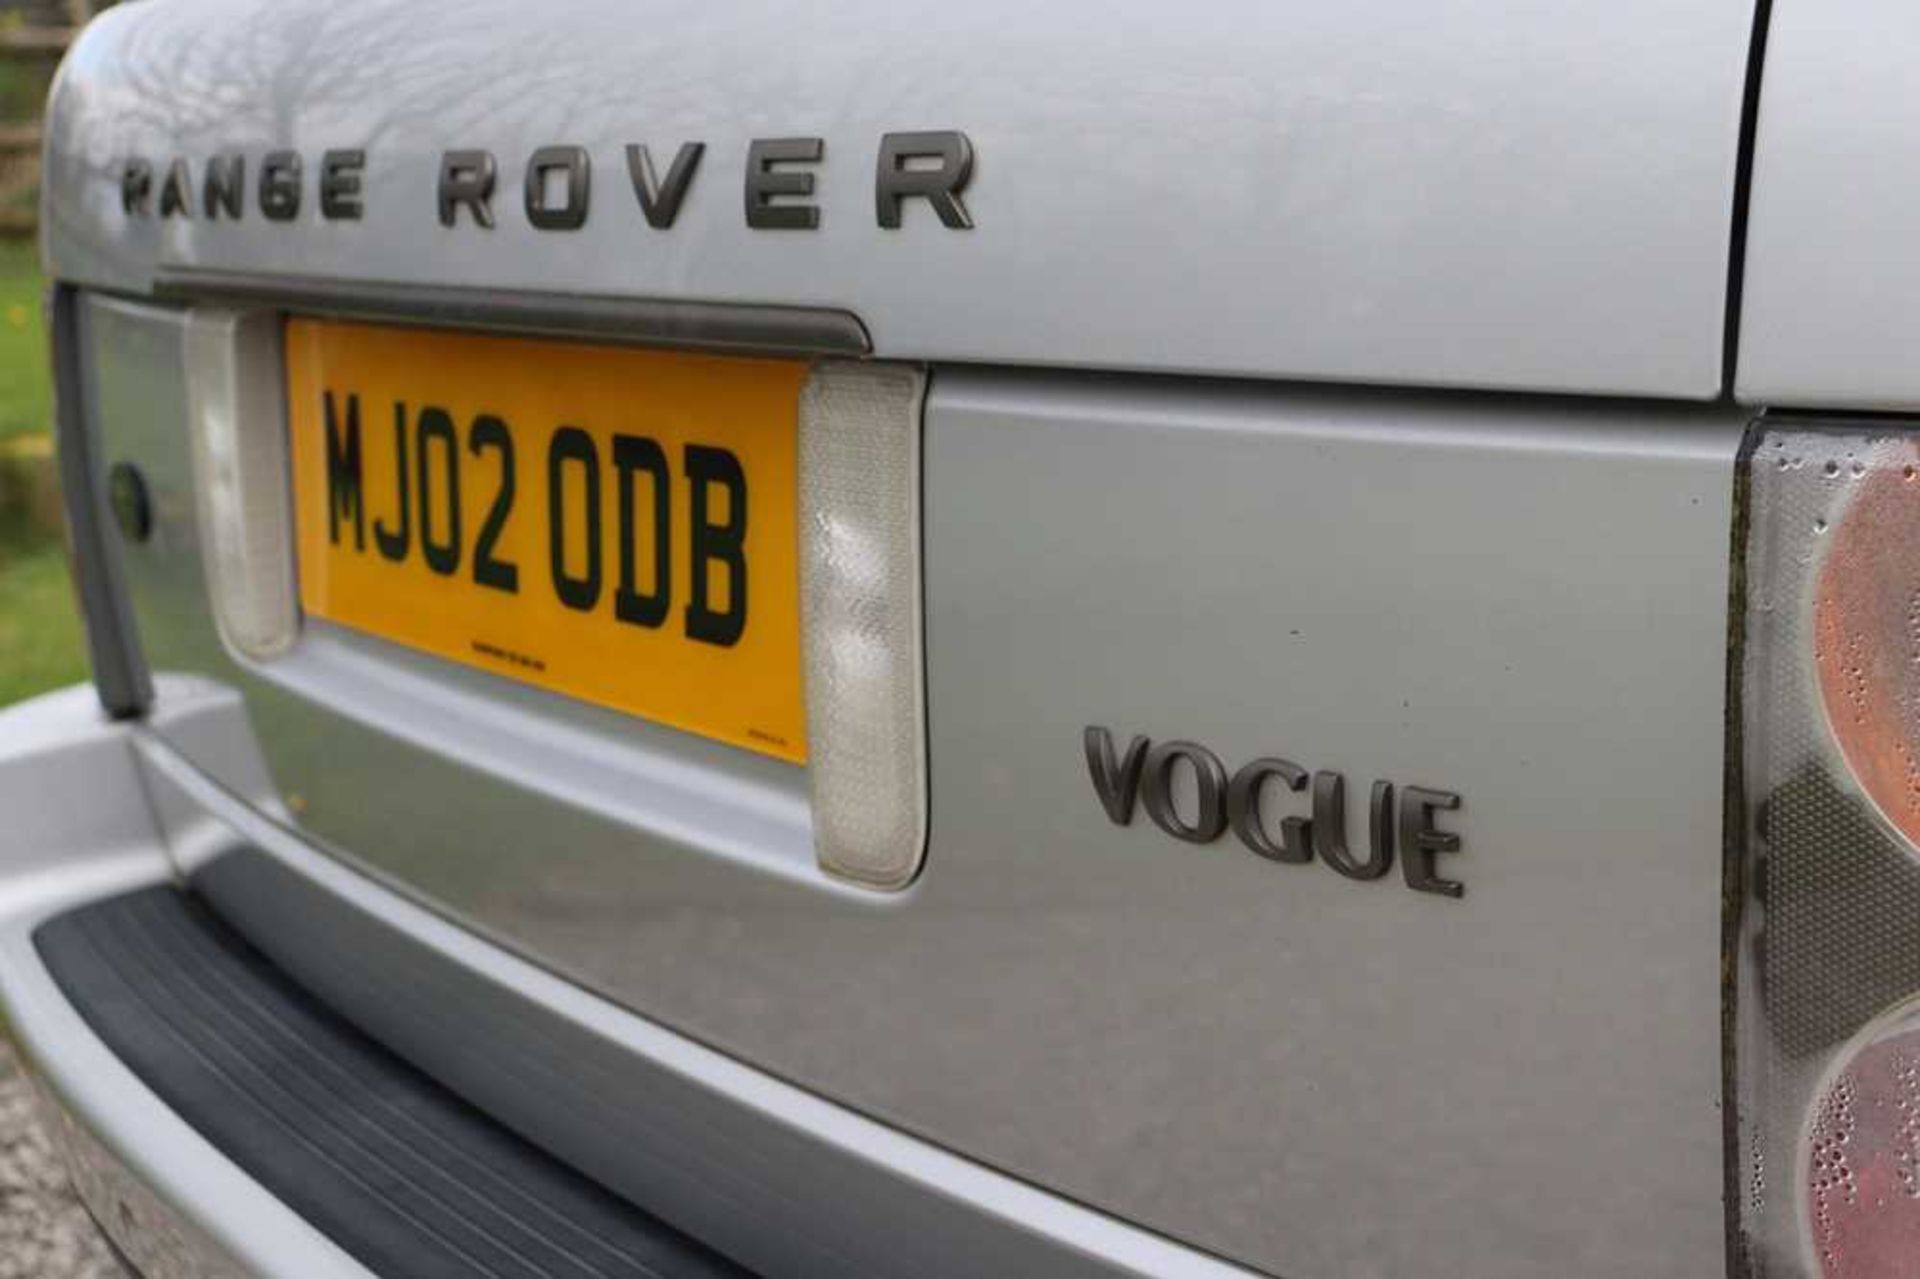 2002 Range Rover Vogue V8 - Image 14 of 53